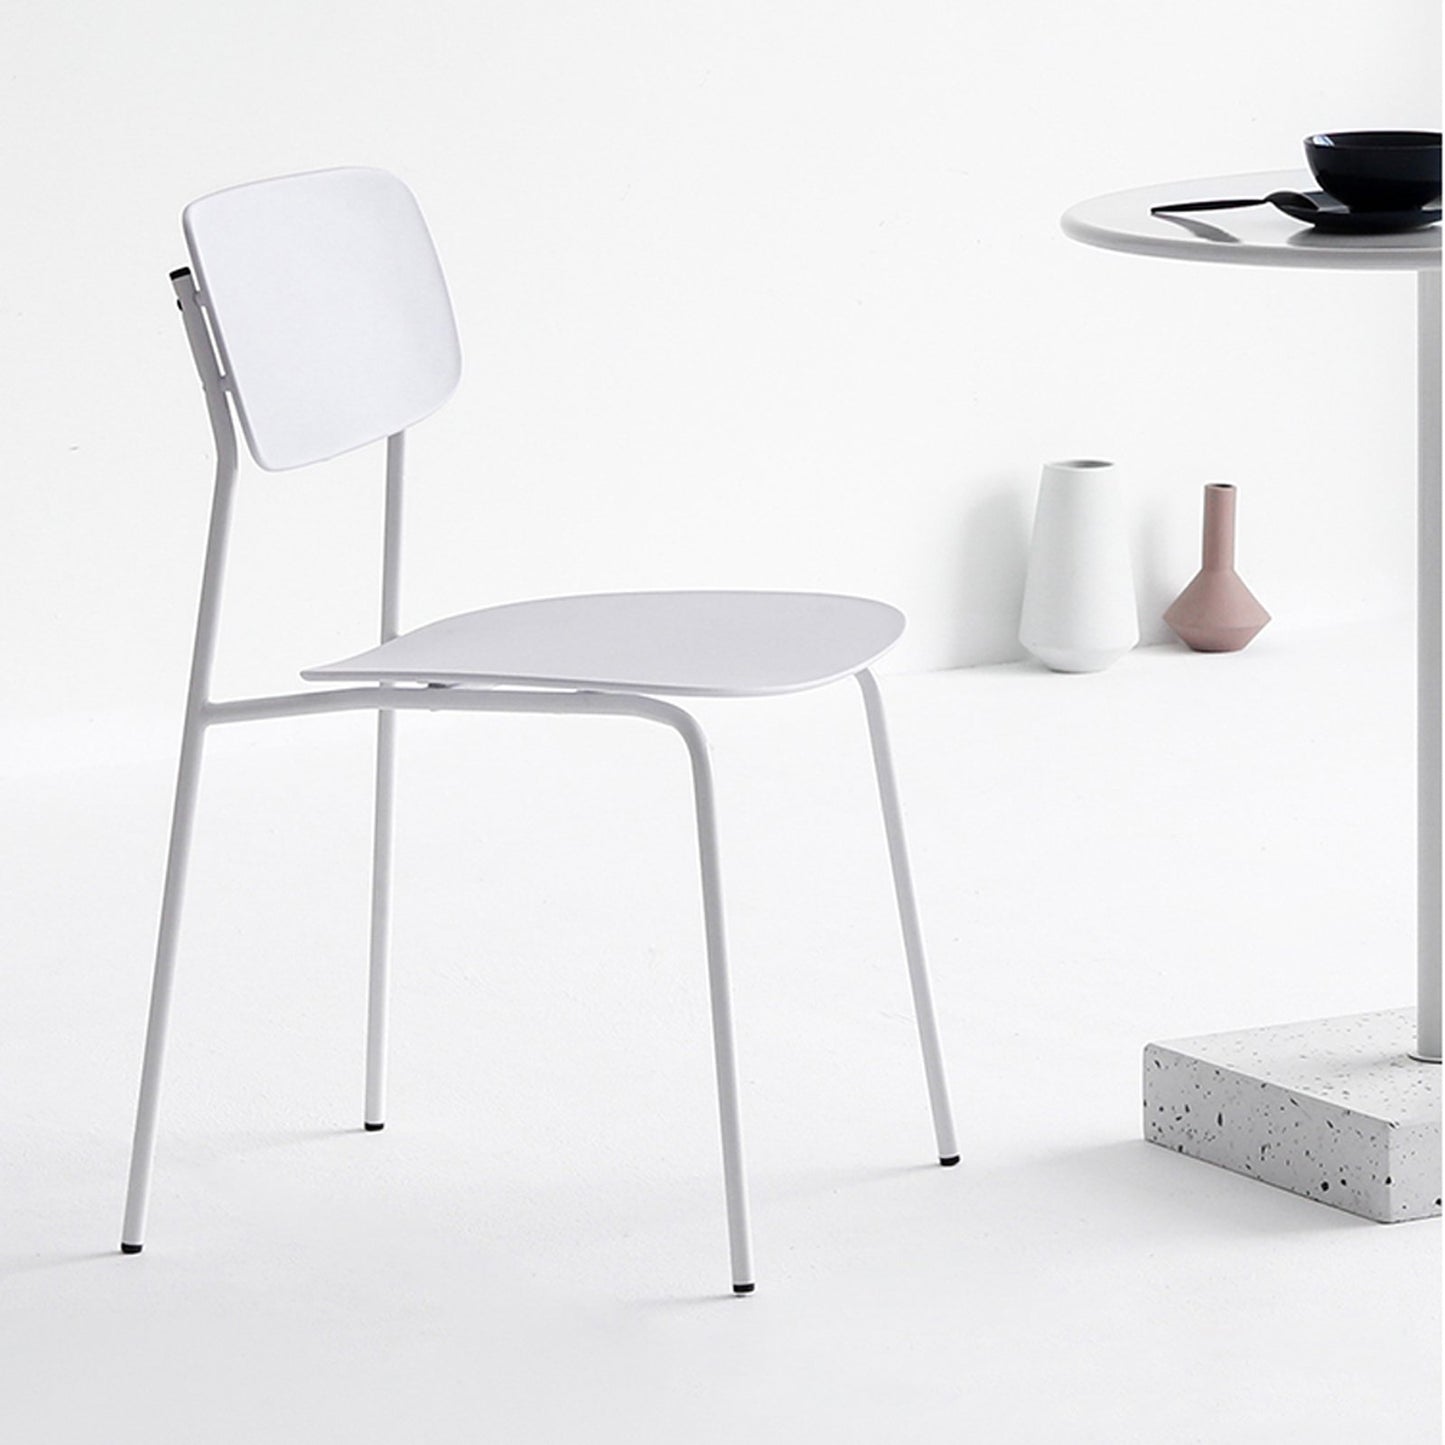 Chaise scandinave au design minimaliste coloris blanc